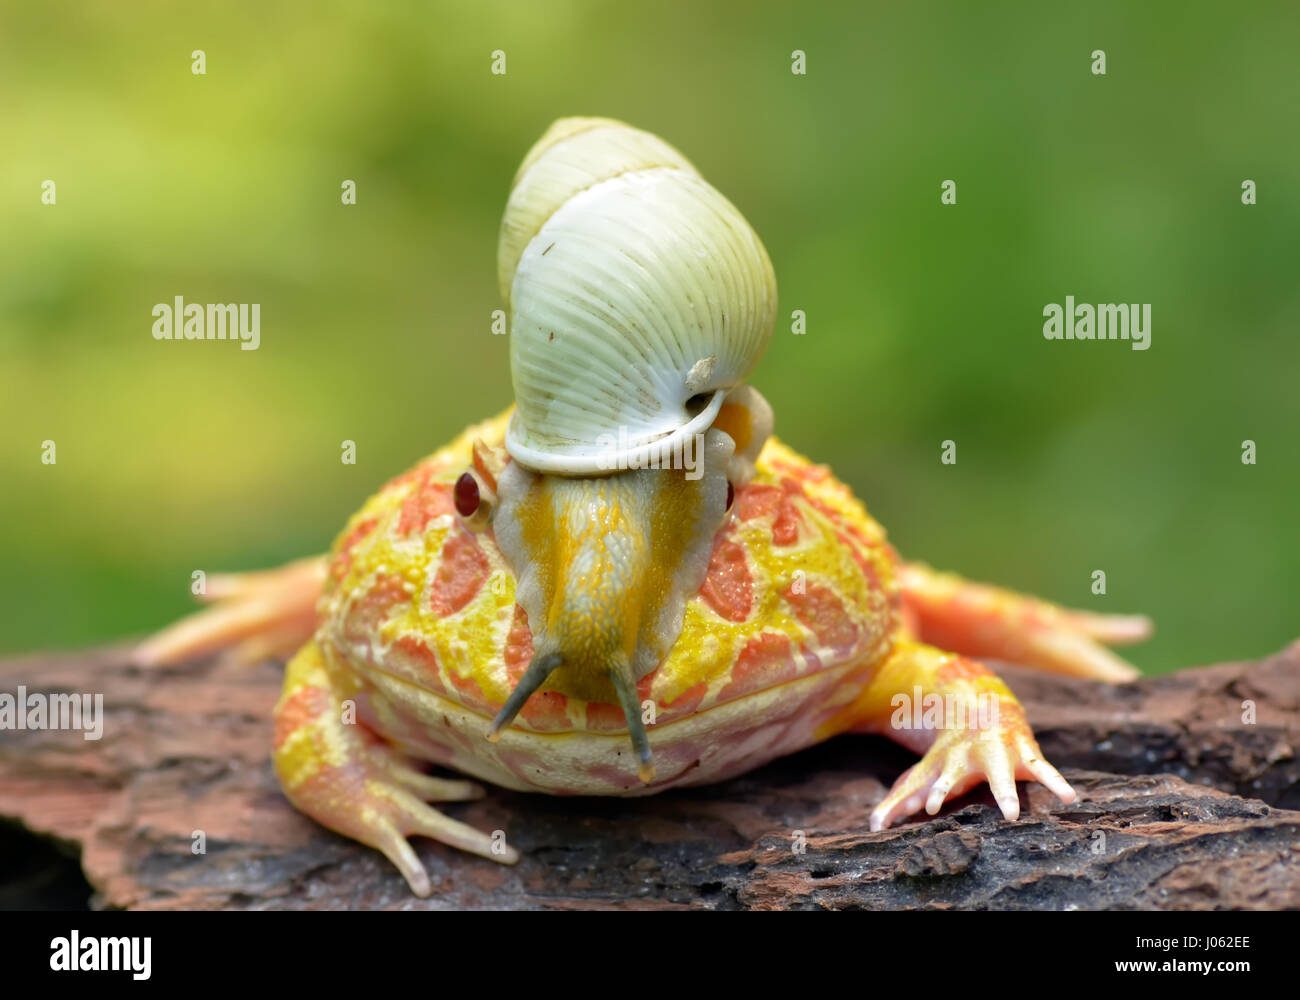 TANGERANG, Indonesien: Witzige Bilder zeigen einen bunten Pacman Frosch eine Schnecke wie einen Helm tragen, während sie auf einem Baumstamm entspannt. Baureihe ungewöhnliche Schnappschüsse von dieser Show "Schnecke-erfüllt", die unbeirrt Amphibie strike eine Pose für die Kamera, sichtlich stolz zu zeigen, seine neu gestalteten Kopfschmuck. Es ist nicht nur der Frosch, der mit seinen neu gewonnenen Freund bequem ist, wie die Schnecke zu sehen ist, selbst zu Hause, schnüffeln und Schiebe seinen Weg nach unten zu den Frosch Nase inspizieren zu machen. Lustige Bilder wurden vom Filialleiter Thomas Chandra (42) in der Nähe von Tangerang, Indonesien schnappte. Thomas Chandra / Medien Stockfoto